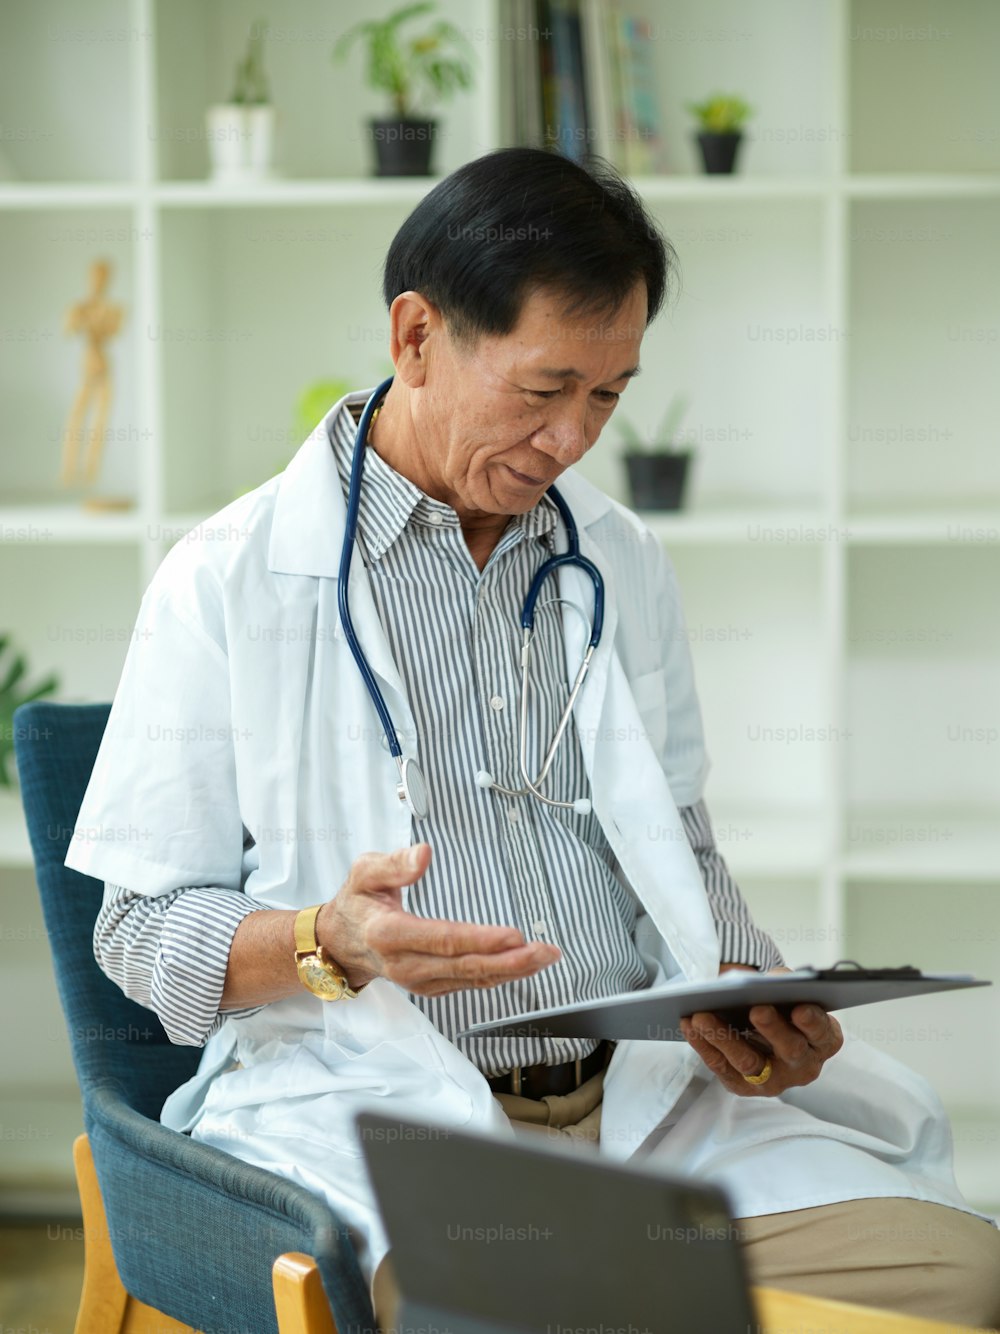 Ein Facharzt mittleren Alters überprüft und liest einen Behandlungsplan für einen Patienten, der verletzt wurde, auf einem medizinischen Klemmbrett.